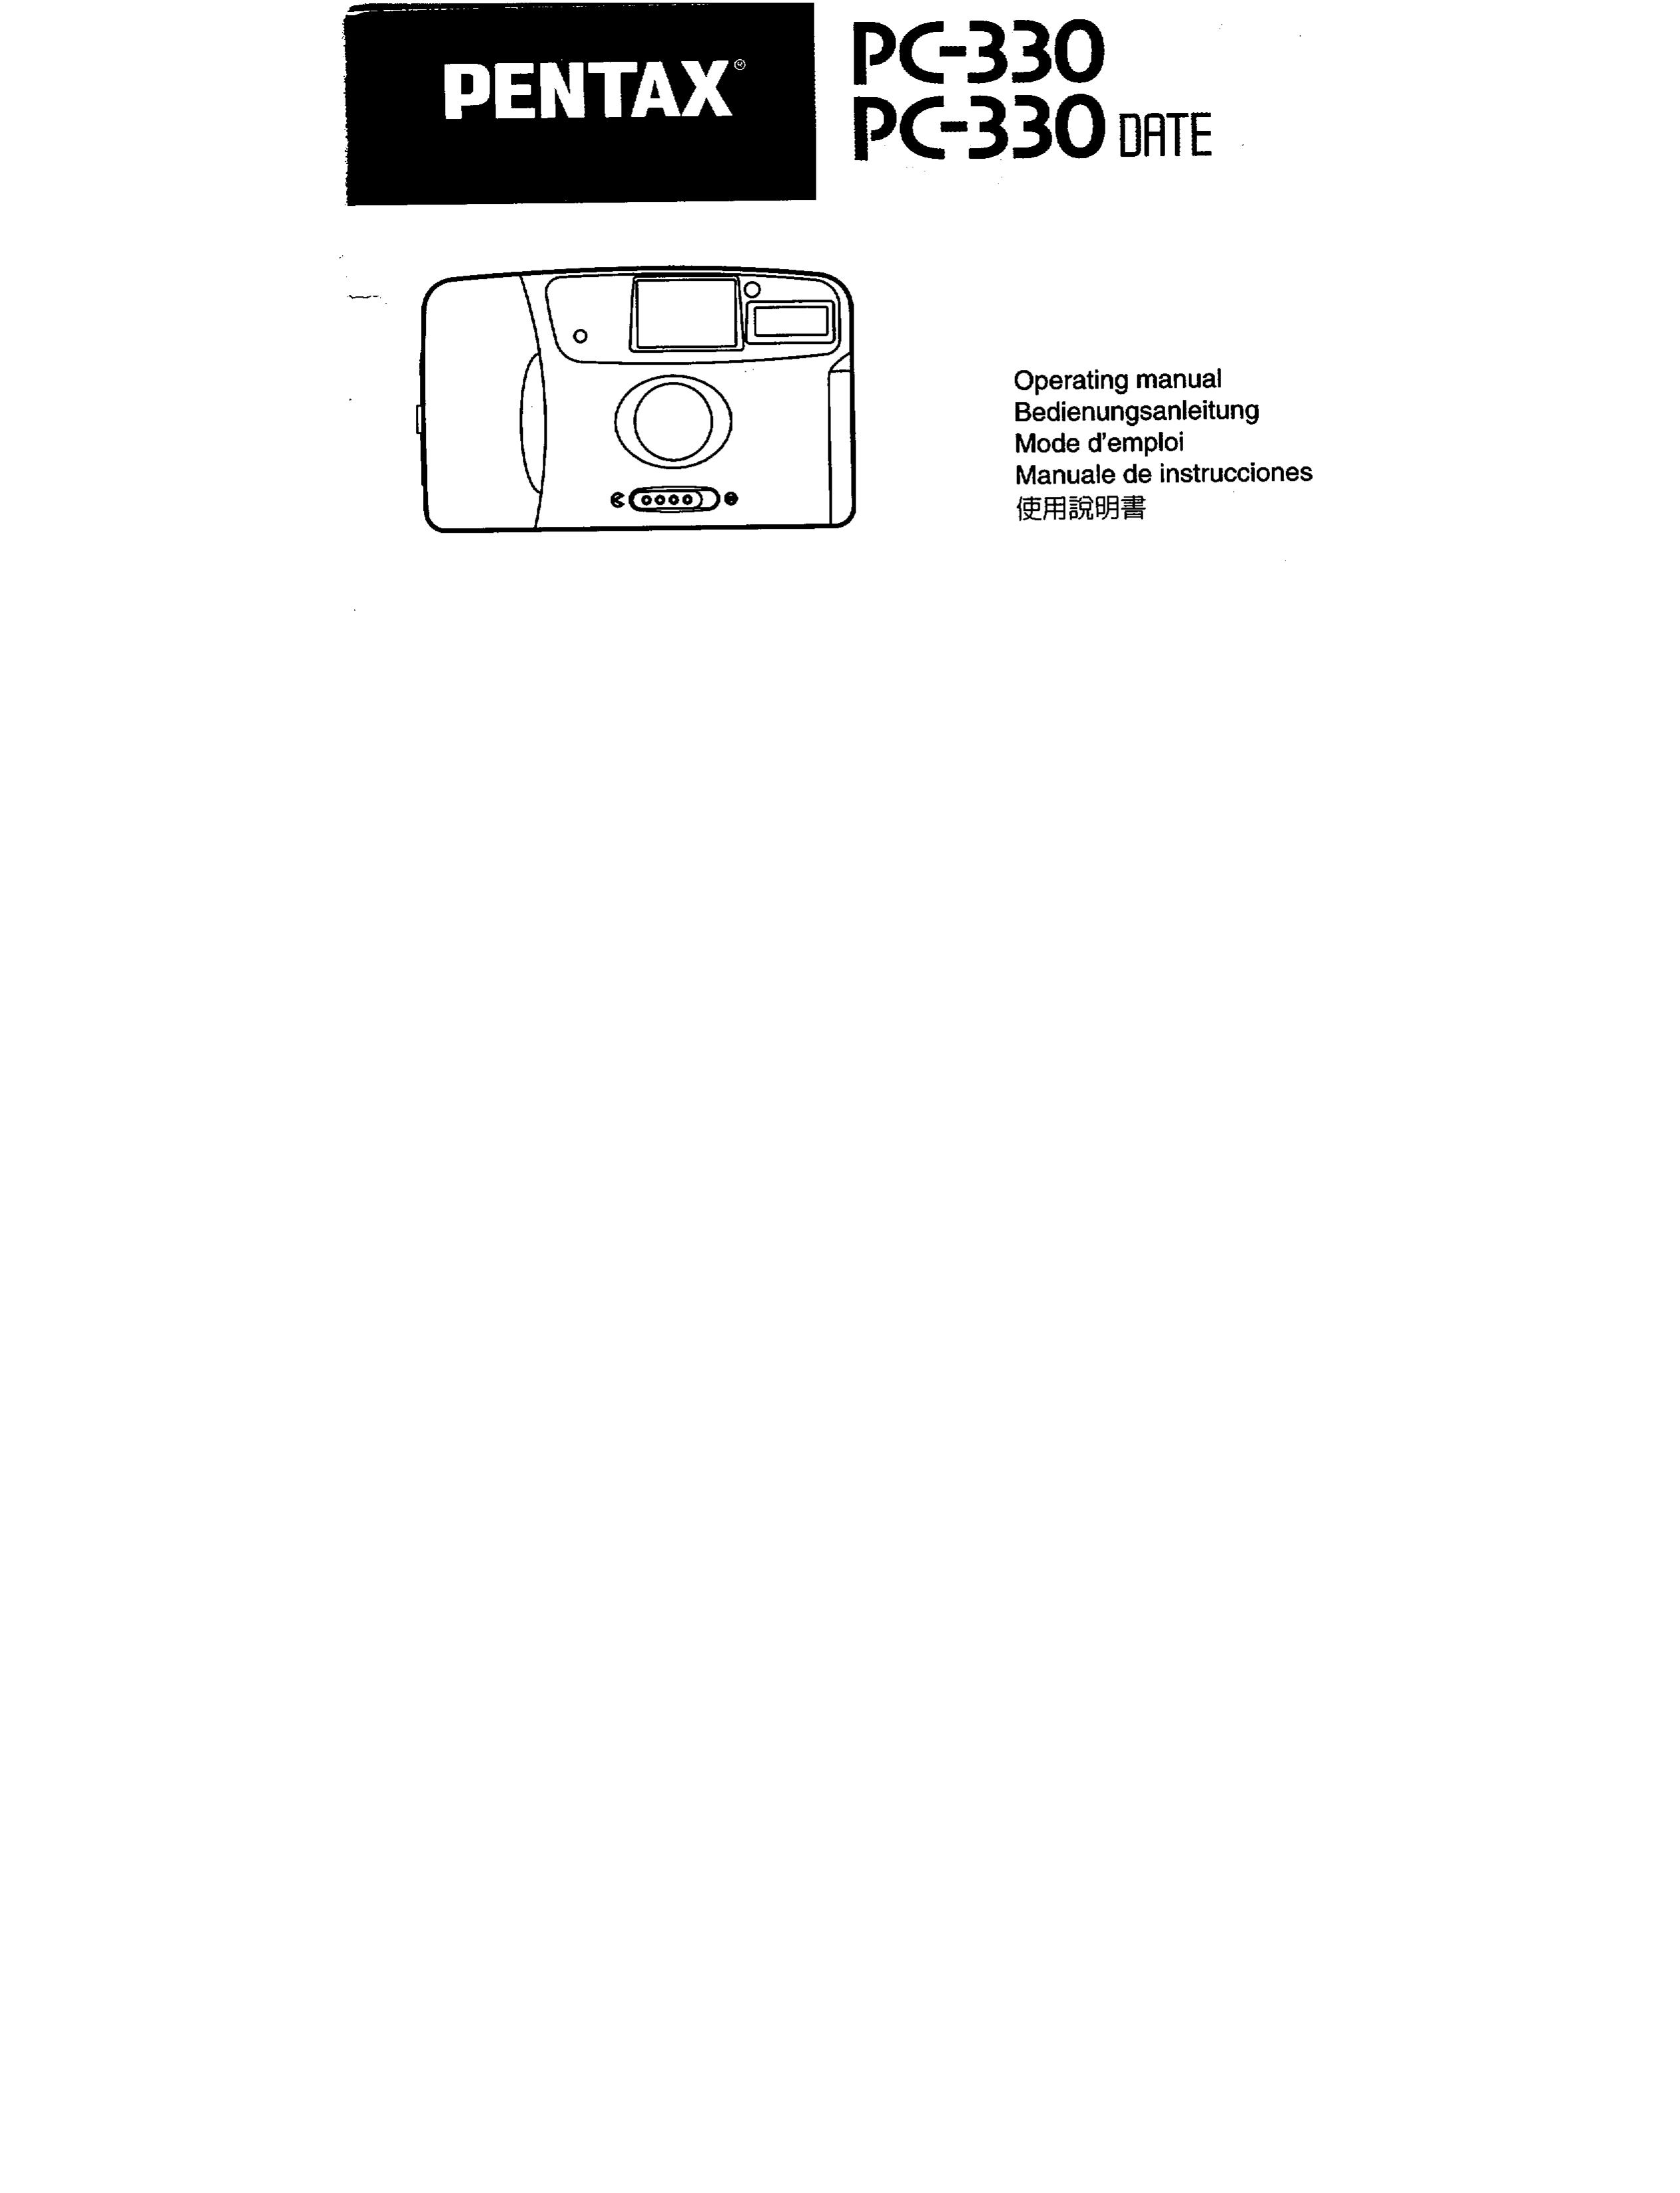 Pentax PC-330 Camcorder User Manual